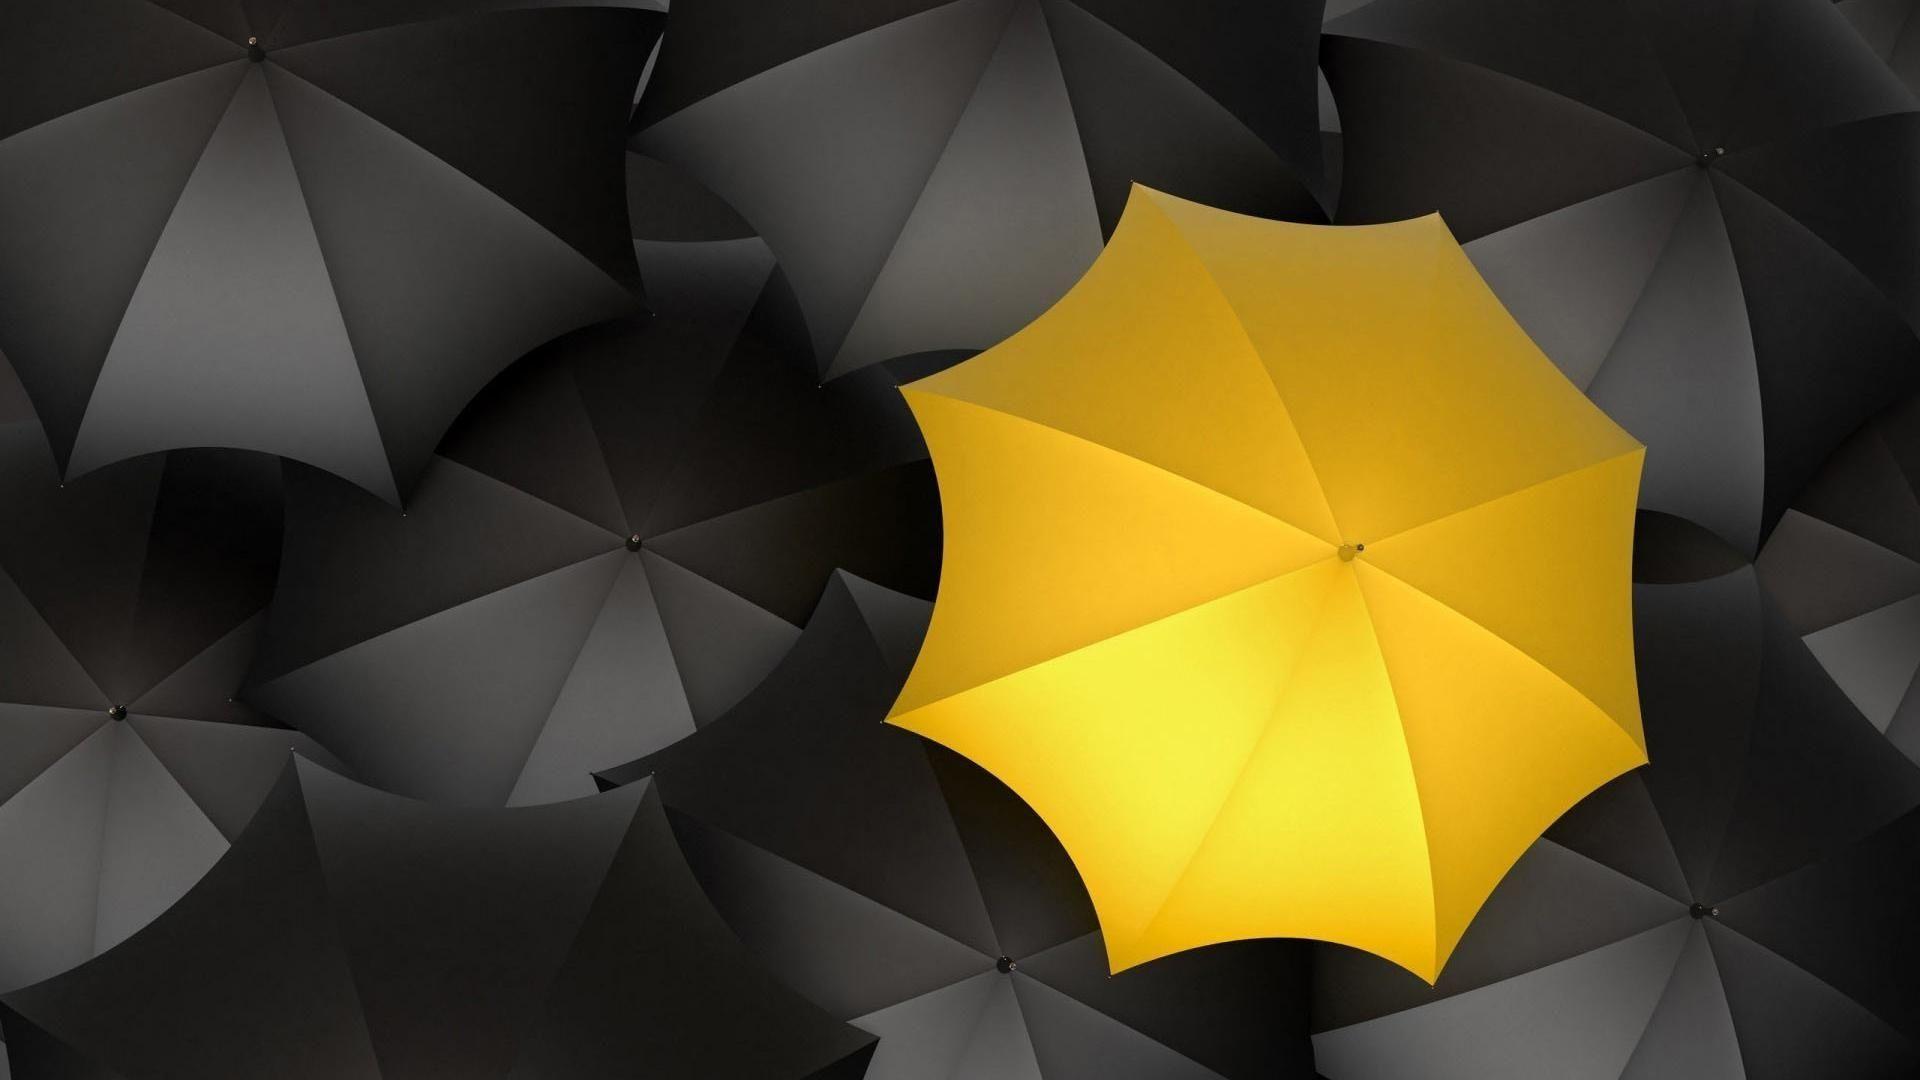 Yellow umbrella himym yellow umbrella umbrella